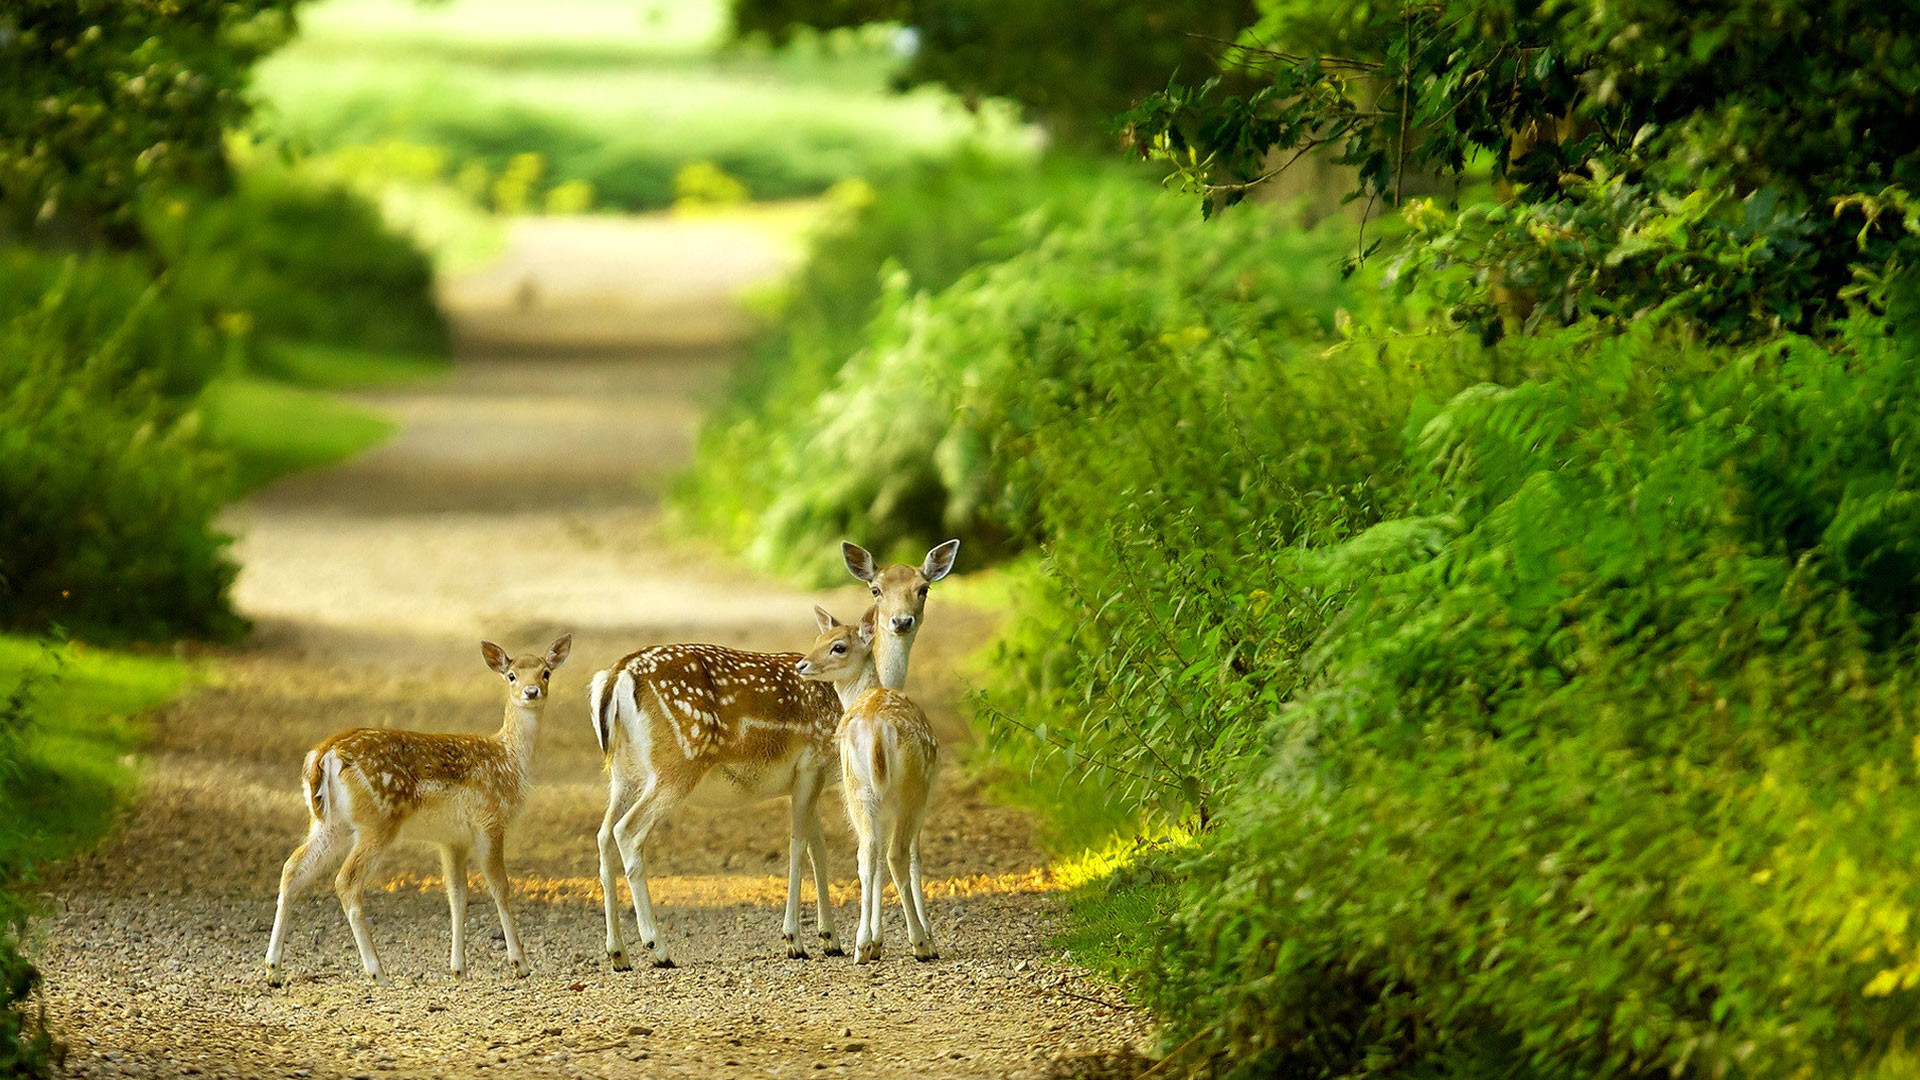 Beautiful baby deer pictures hd 1080p desktop